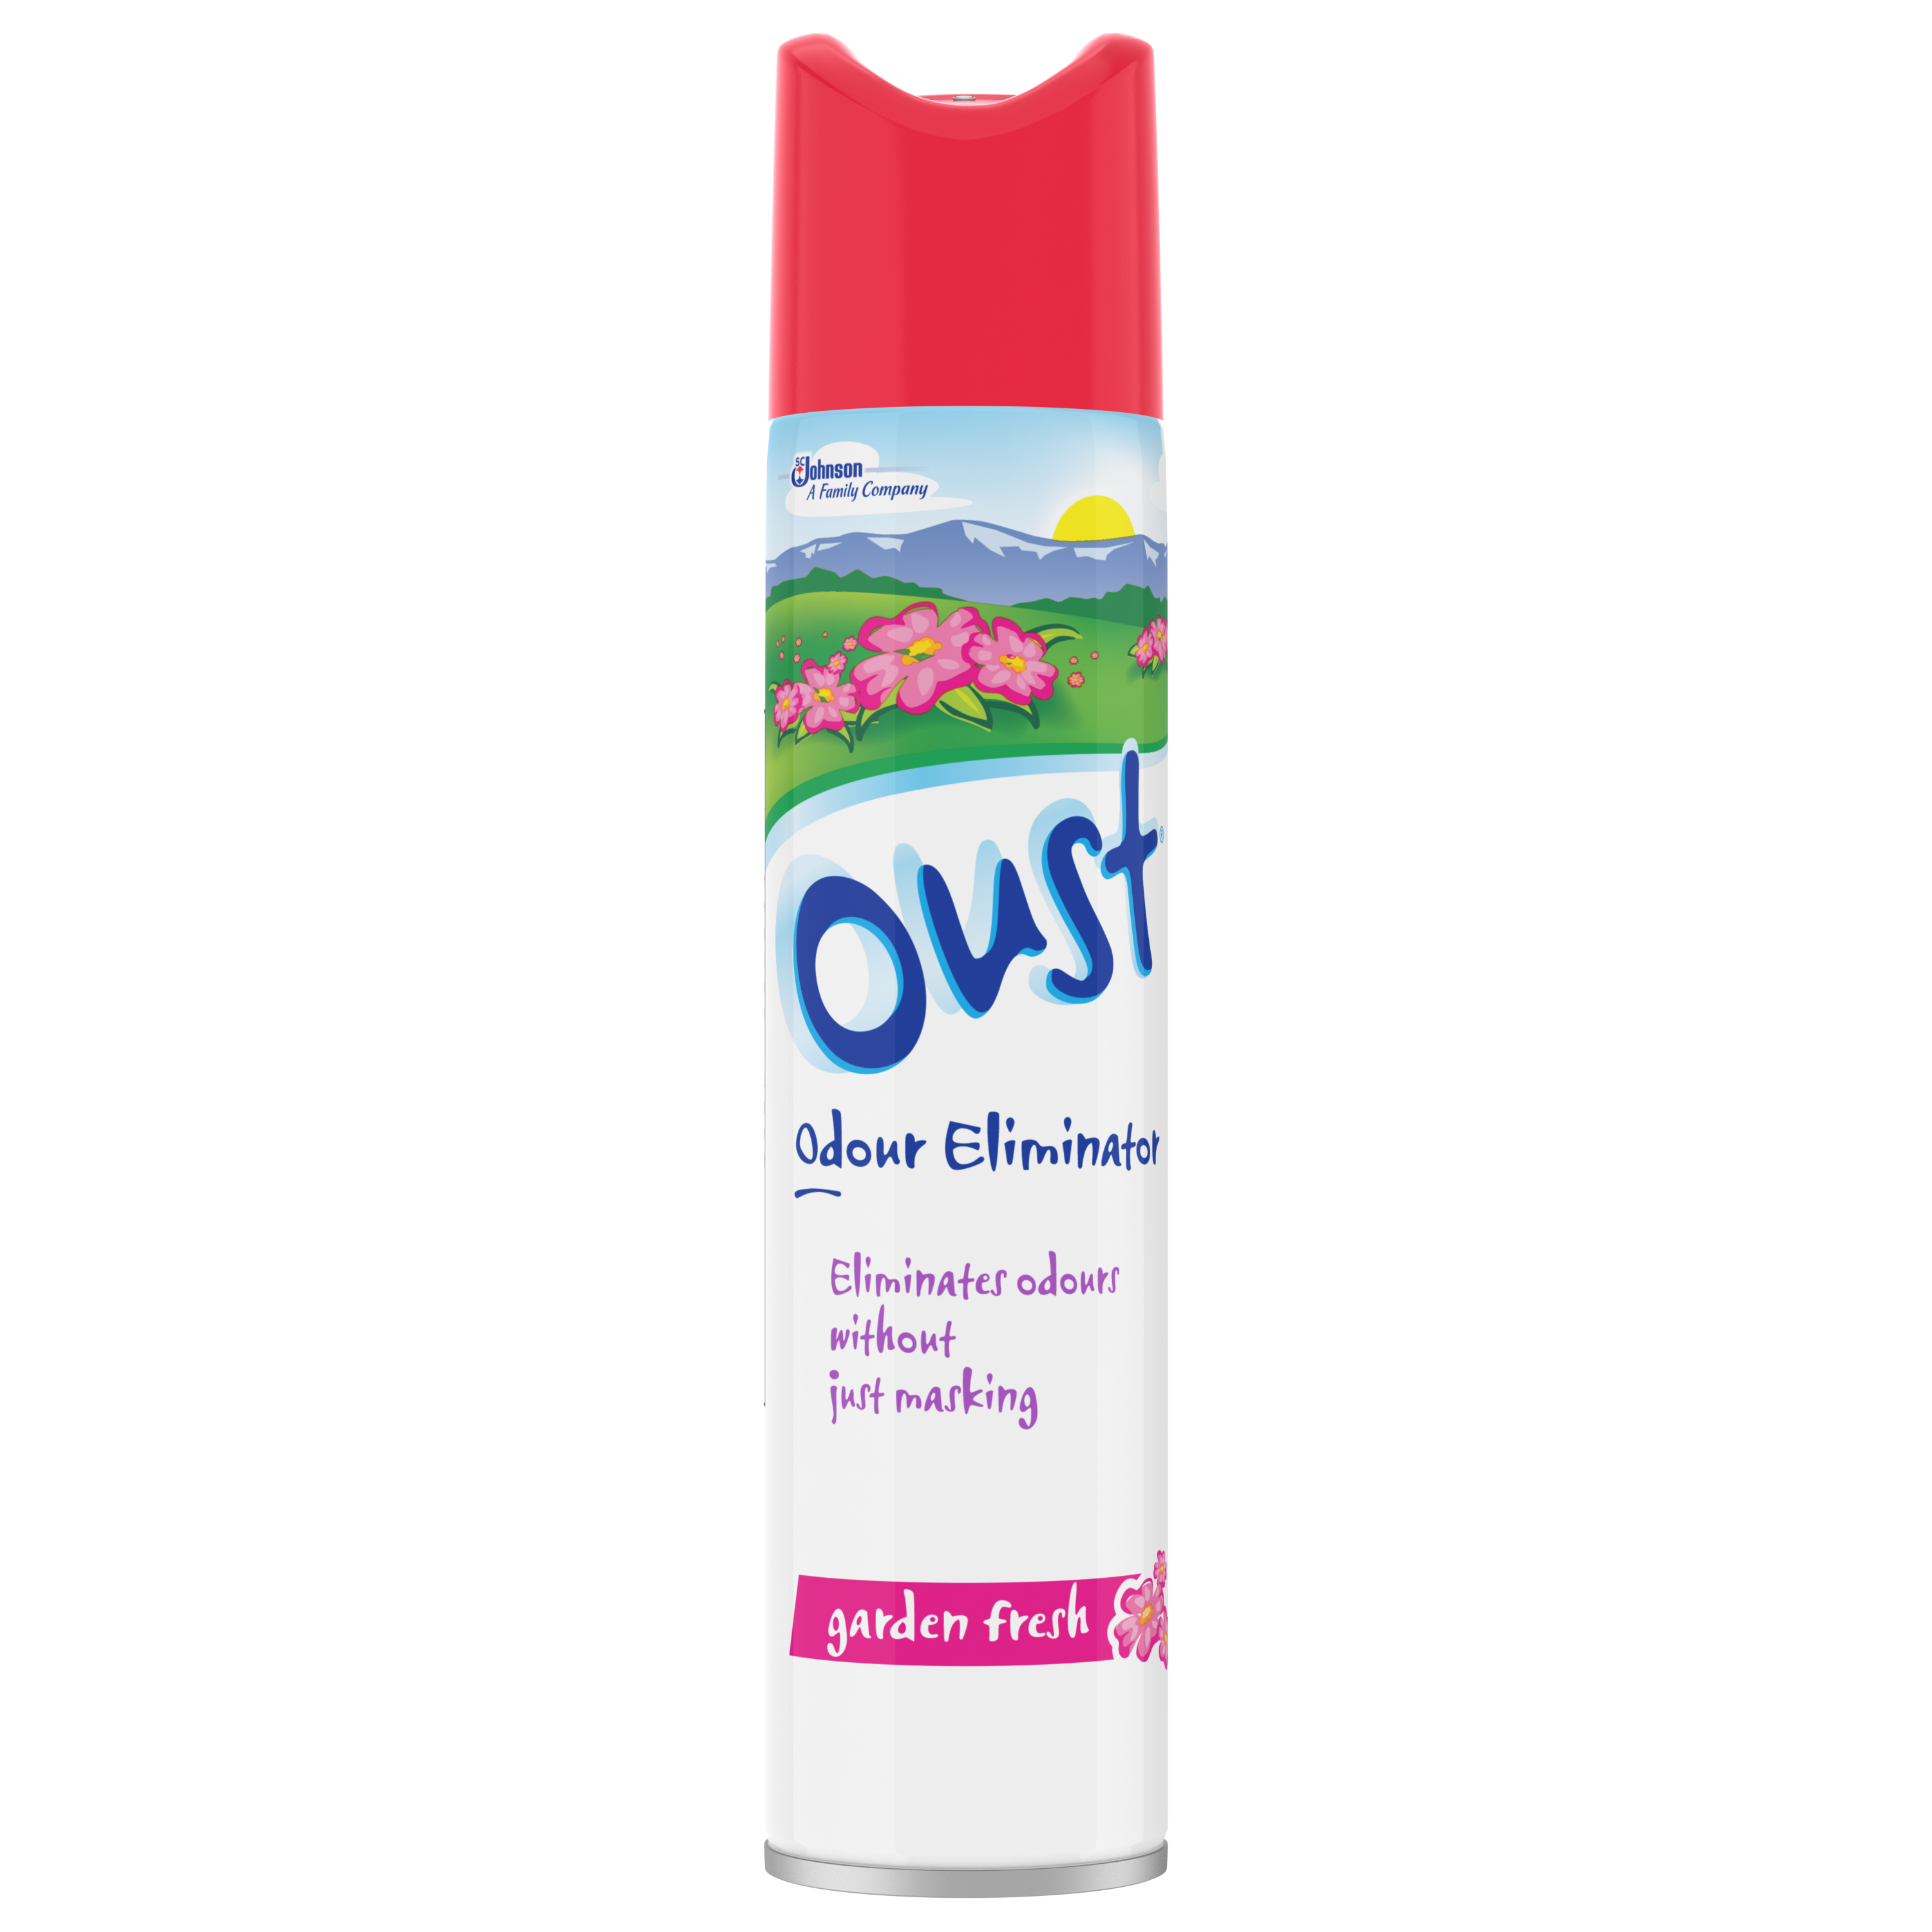 Oust® Odour Eliminator Garden Fresh Air Freshener